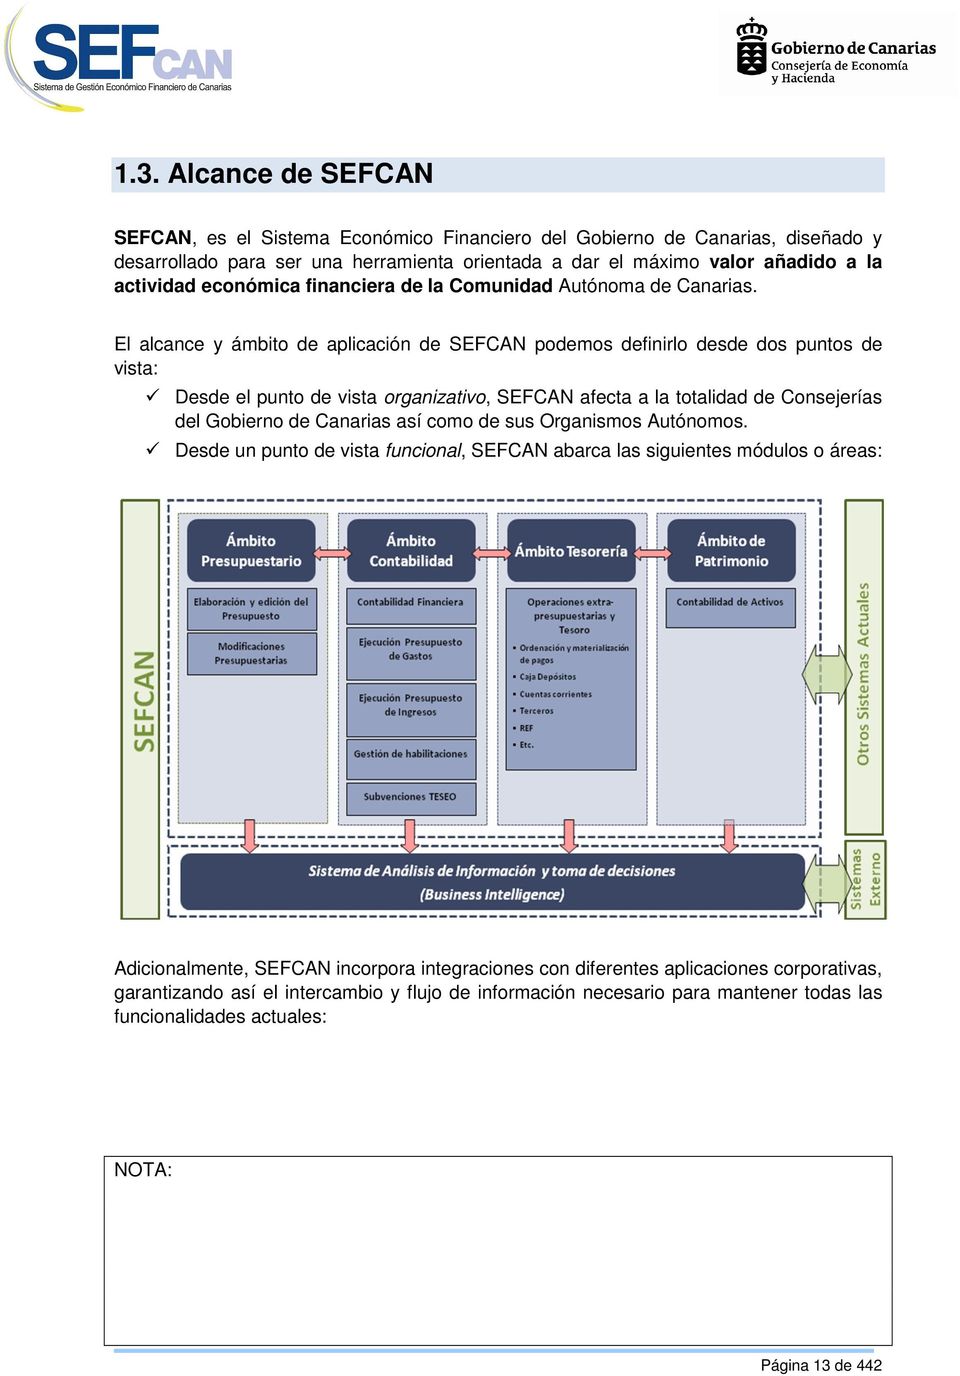 El alcance y ámbito de aplicación de SEFCAN podemos definirlo desde dos puntos de vista: Desde el punto de vista organizativo, SEFCAN afecta a la totalidad de Consejerías del Gobierno de Canarias